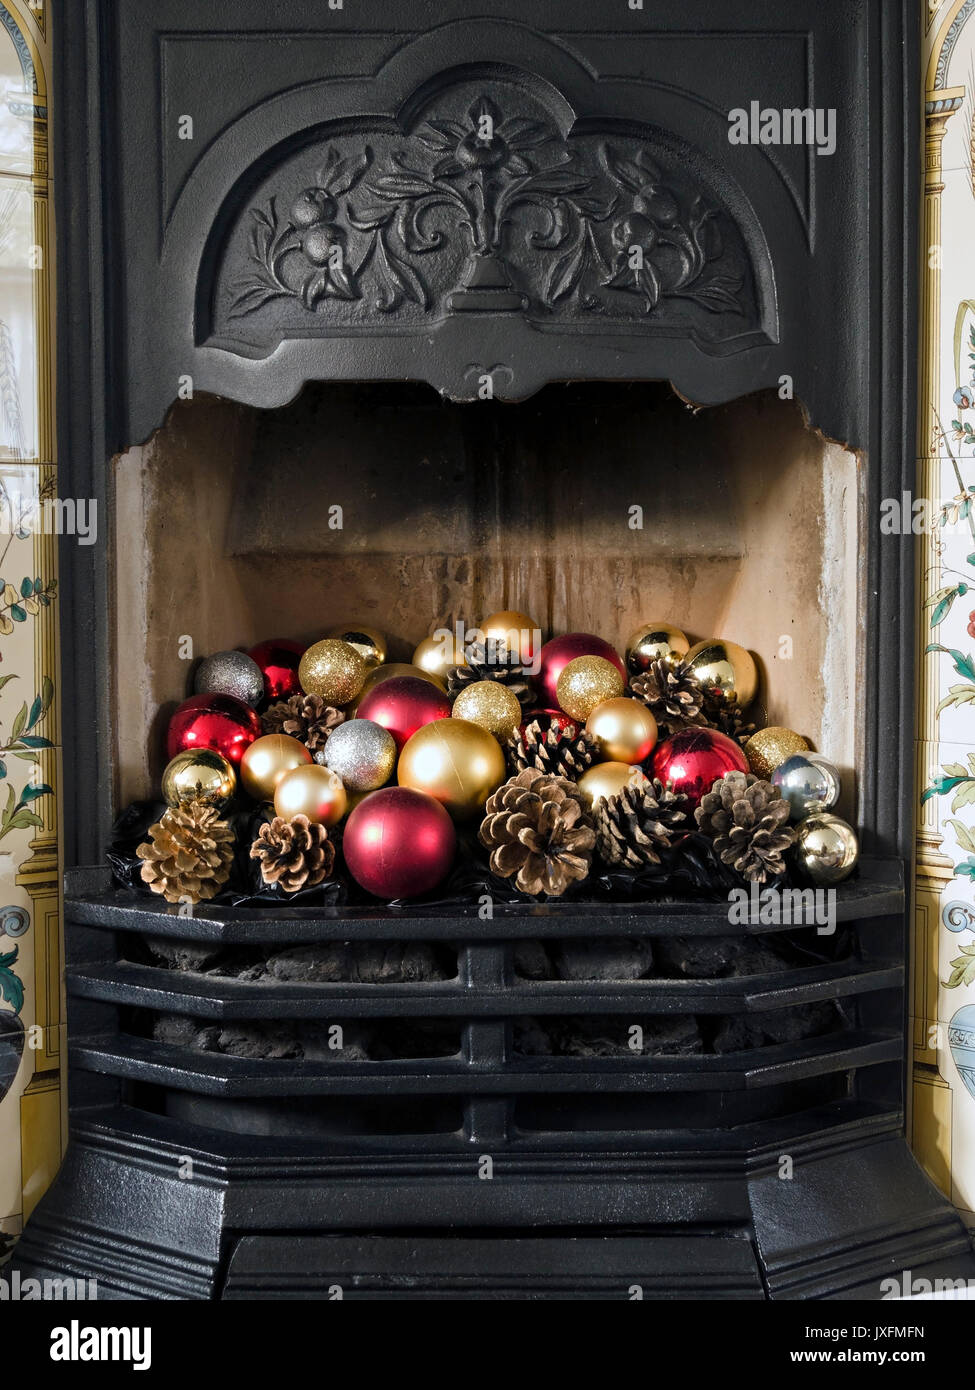 Hübscher, gusseiserner Kamin im viktorianischen Stil mit farbenfrohen Weihnachtskugeln und Tannenzapfen, England, Großbritannien Stockfoto